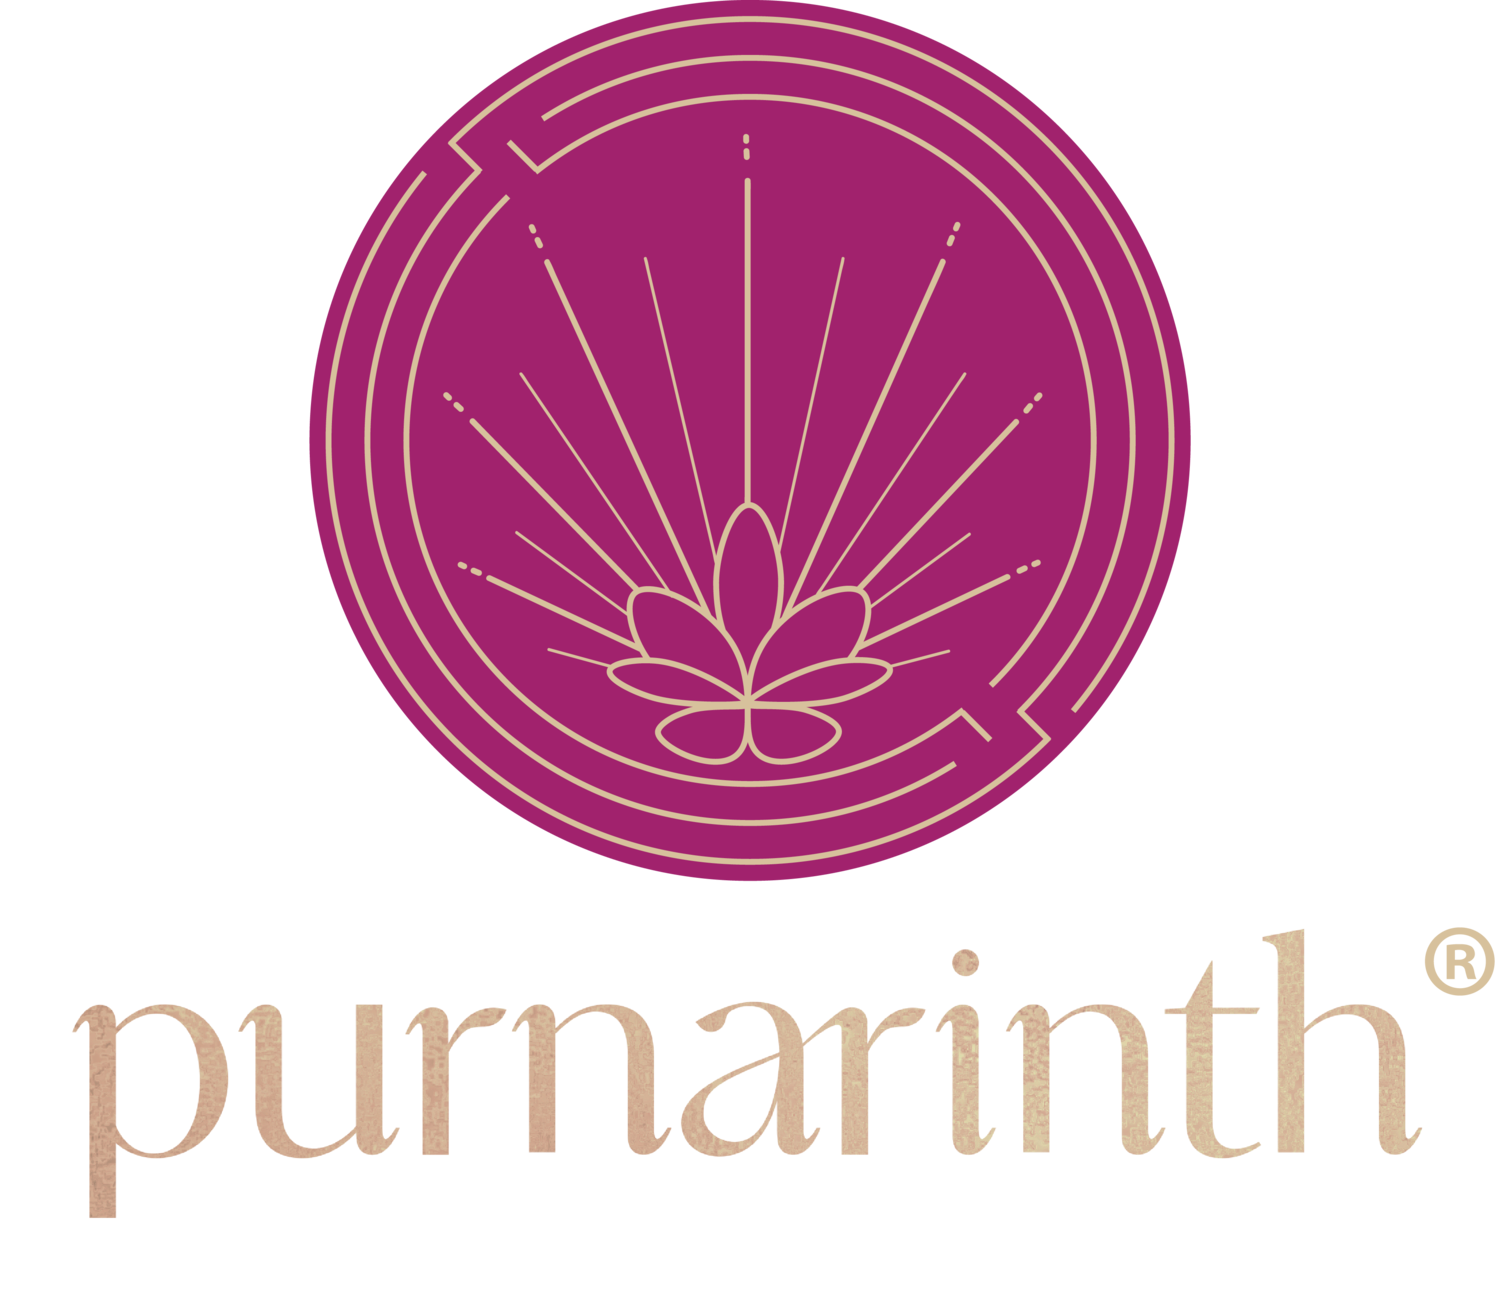 Purnarinth